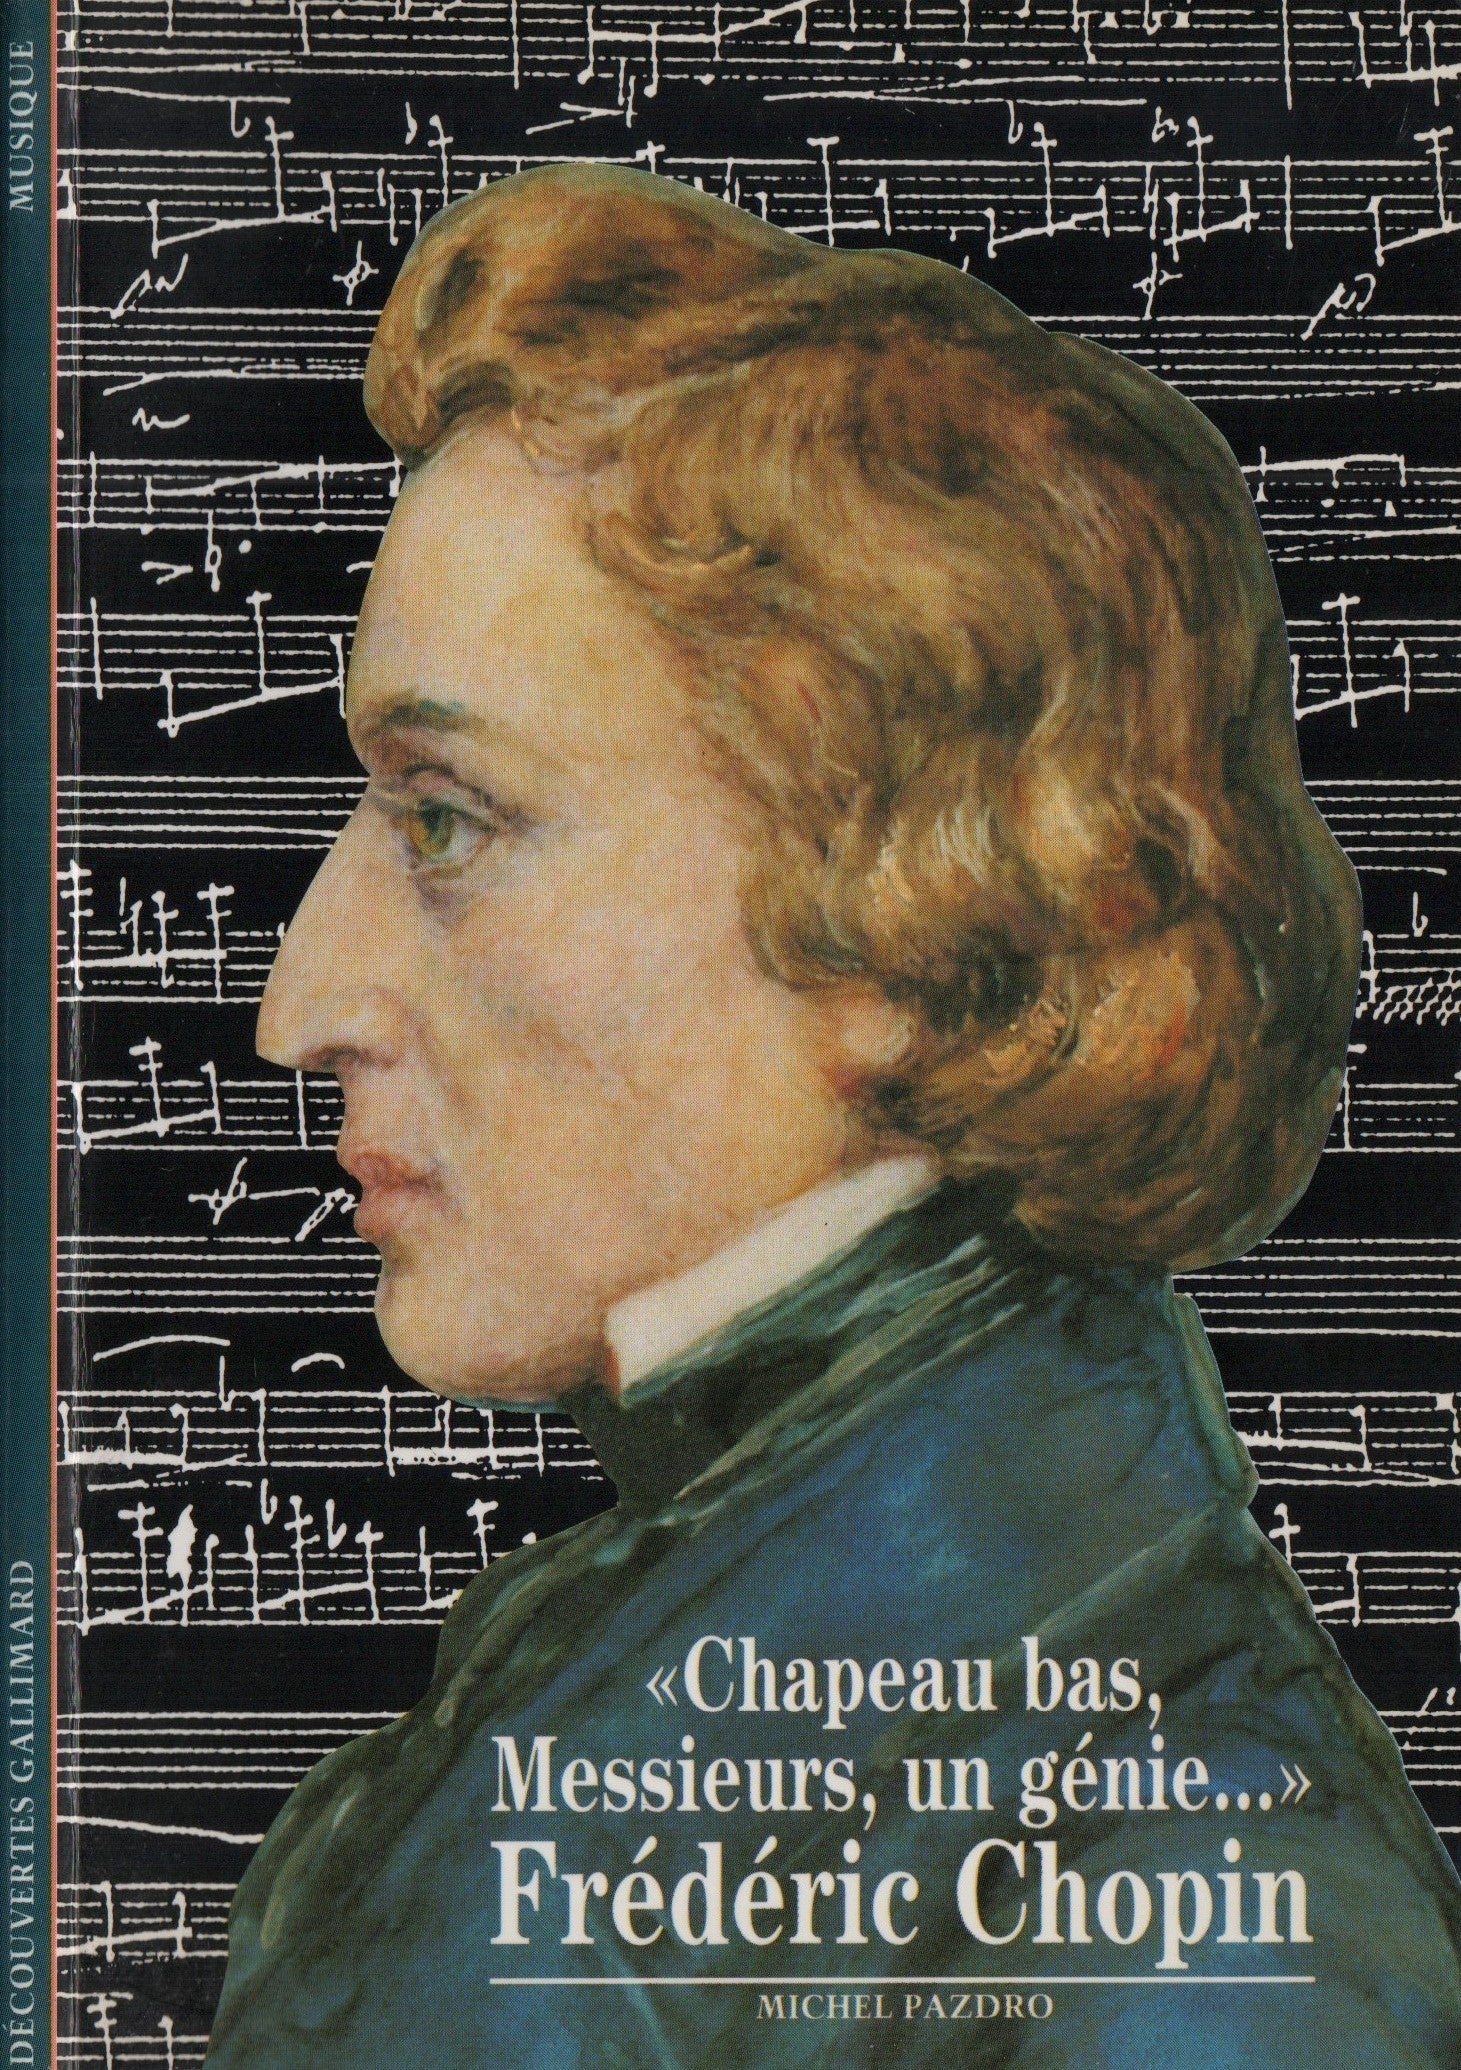 CHOPIN, FREDERIC. Frédéric Chopin : "Chapeau bas, Messieurs, un genie..."